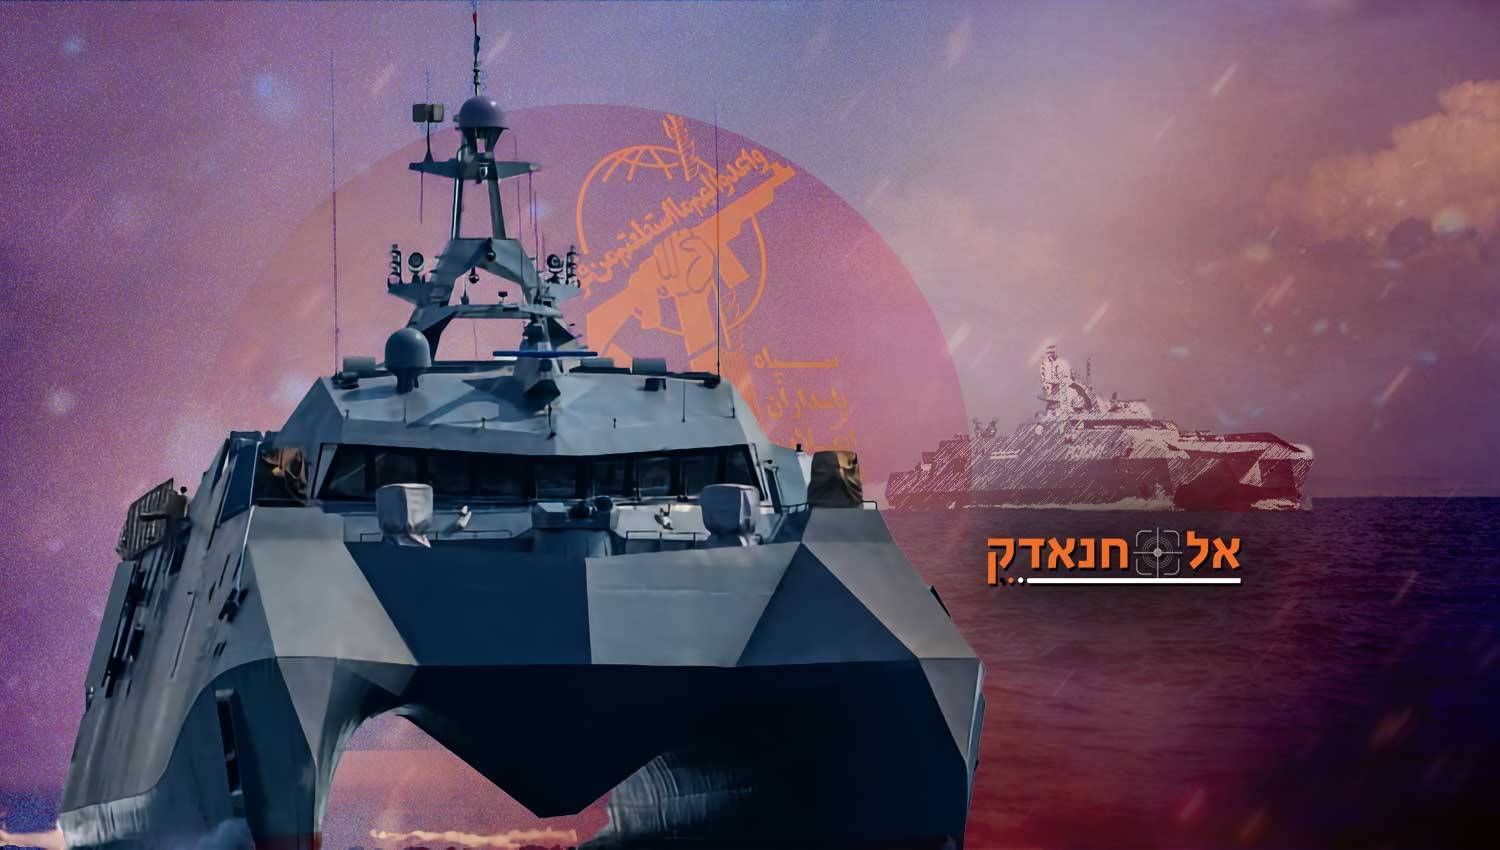 המפרט הבולט ביותר של ספינת הלחימה "אבו מהדי אל -מוהנדיס"